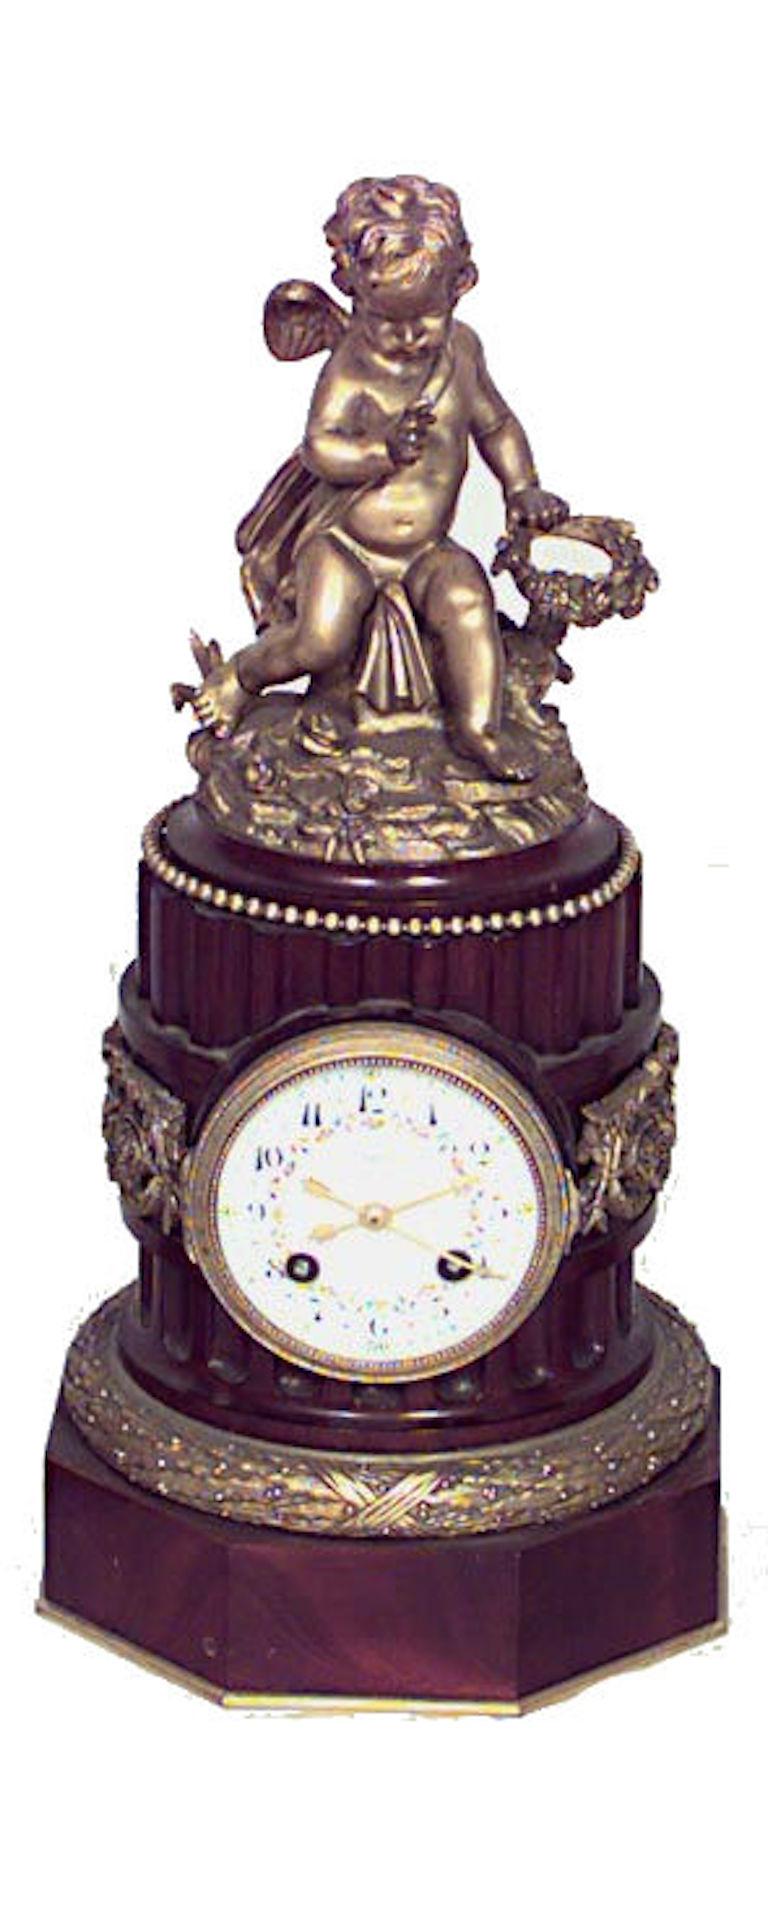 3-teiliges französisches Uhrenset aus Mahagoni im Louis-XVI-Stil (19. Jahrhundert) mit einem Paar Kandelaber mit kanneliertem Design und bronzenen Amoretten und Zierleisten, Kandelaber 14